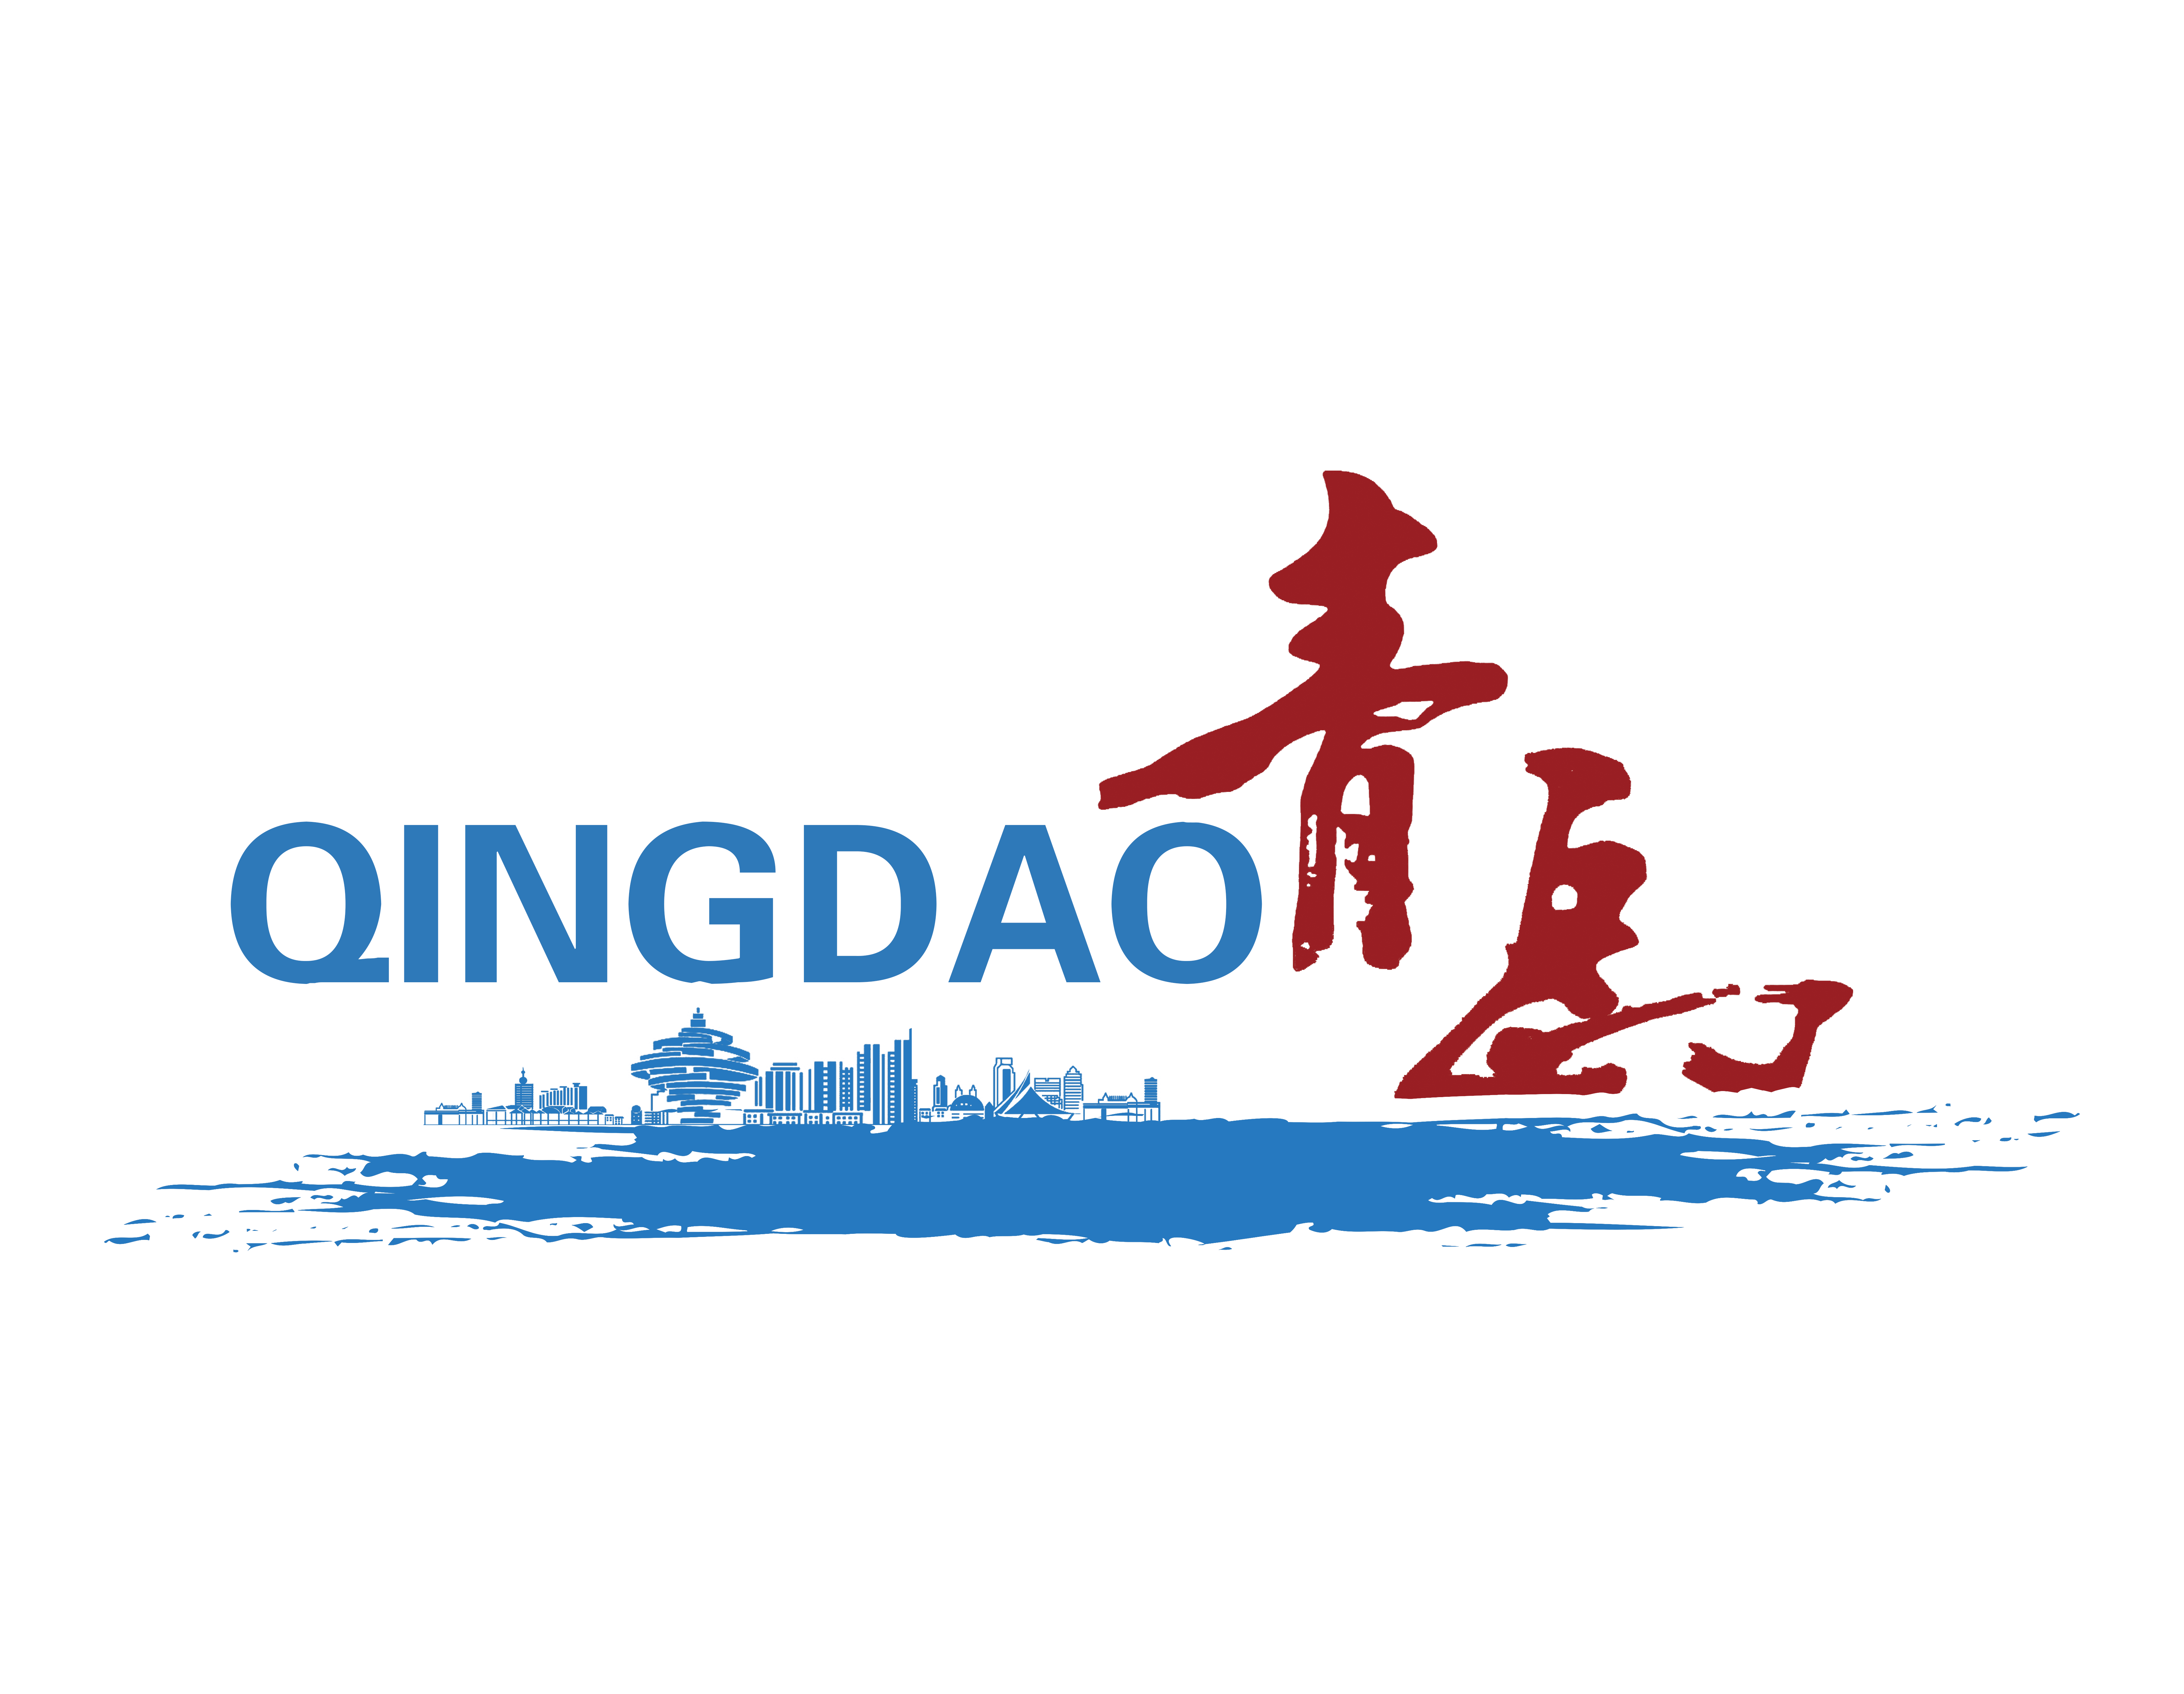 Qingdao - Deutschland: Wirtschaft, Kultur, Tourismus (Austausch + Kooperation)